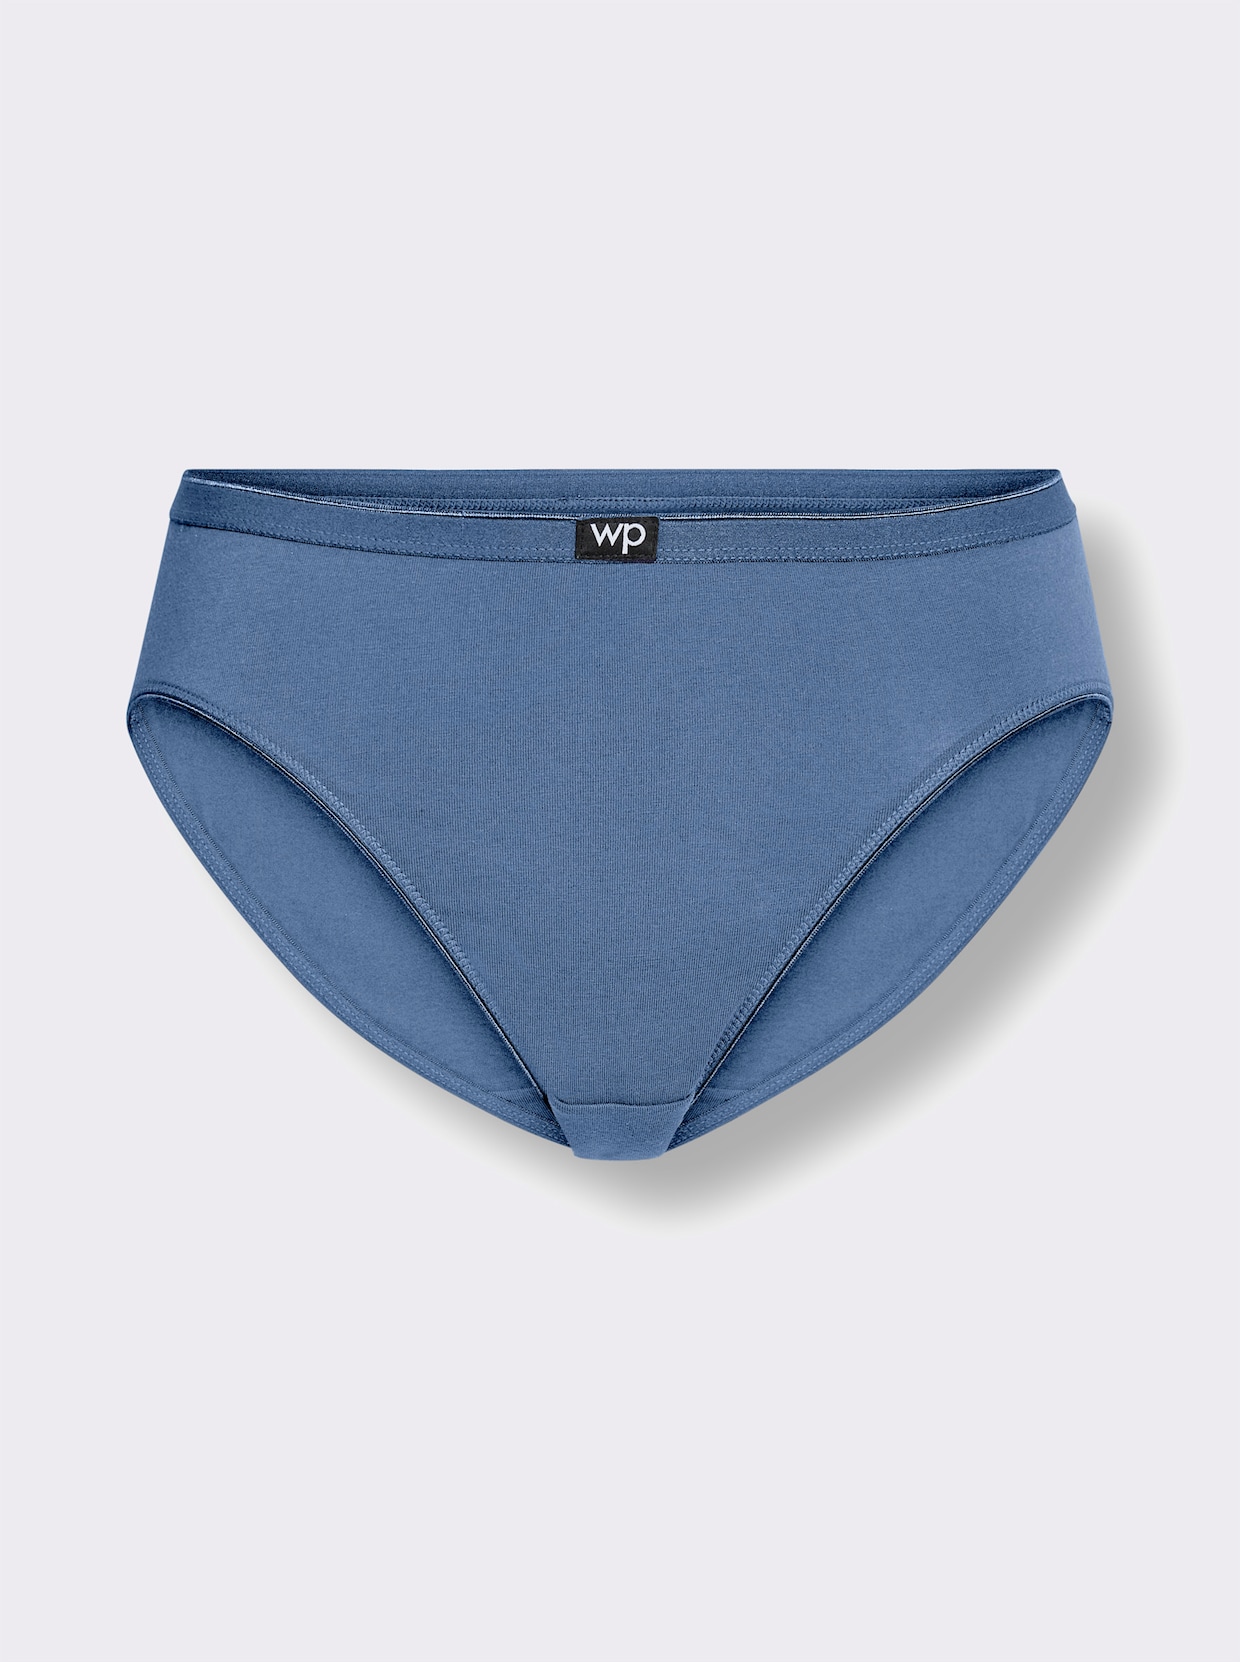 wäschepur Dámske boxerky so zvýšeným pásom - tmavosivý melír + džínsová modrá + antracitová + červená + námornícka modrá